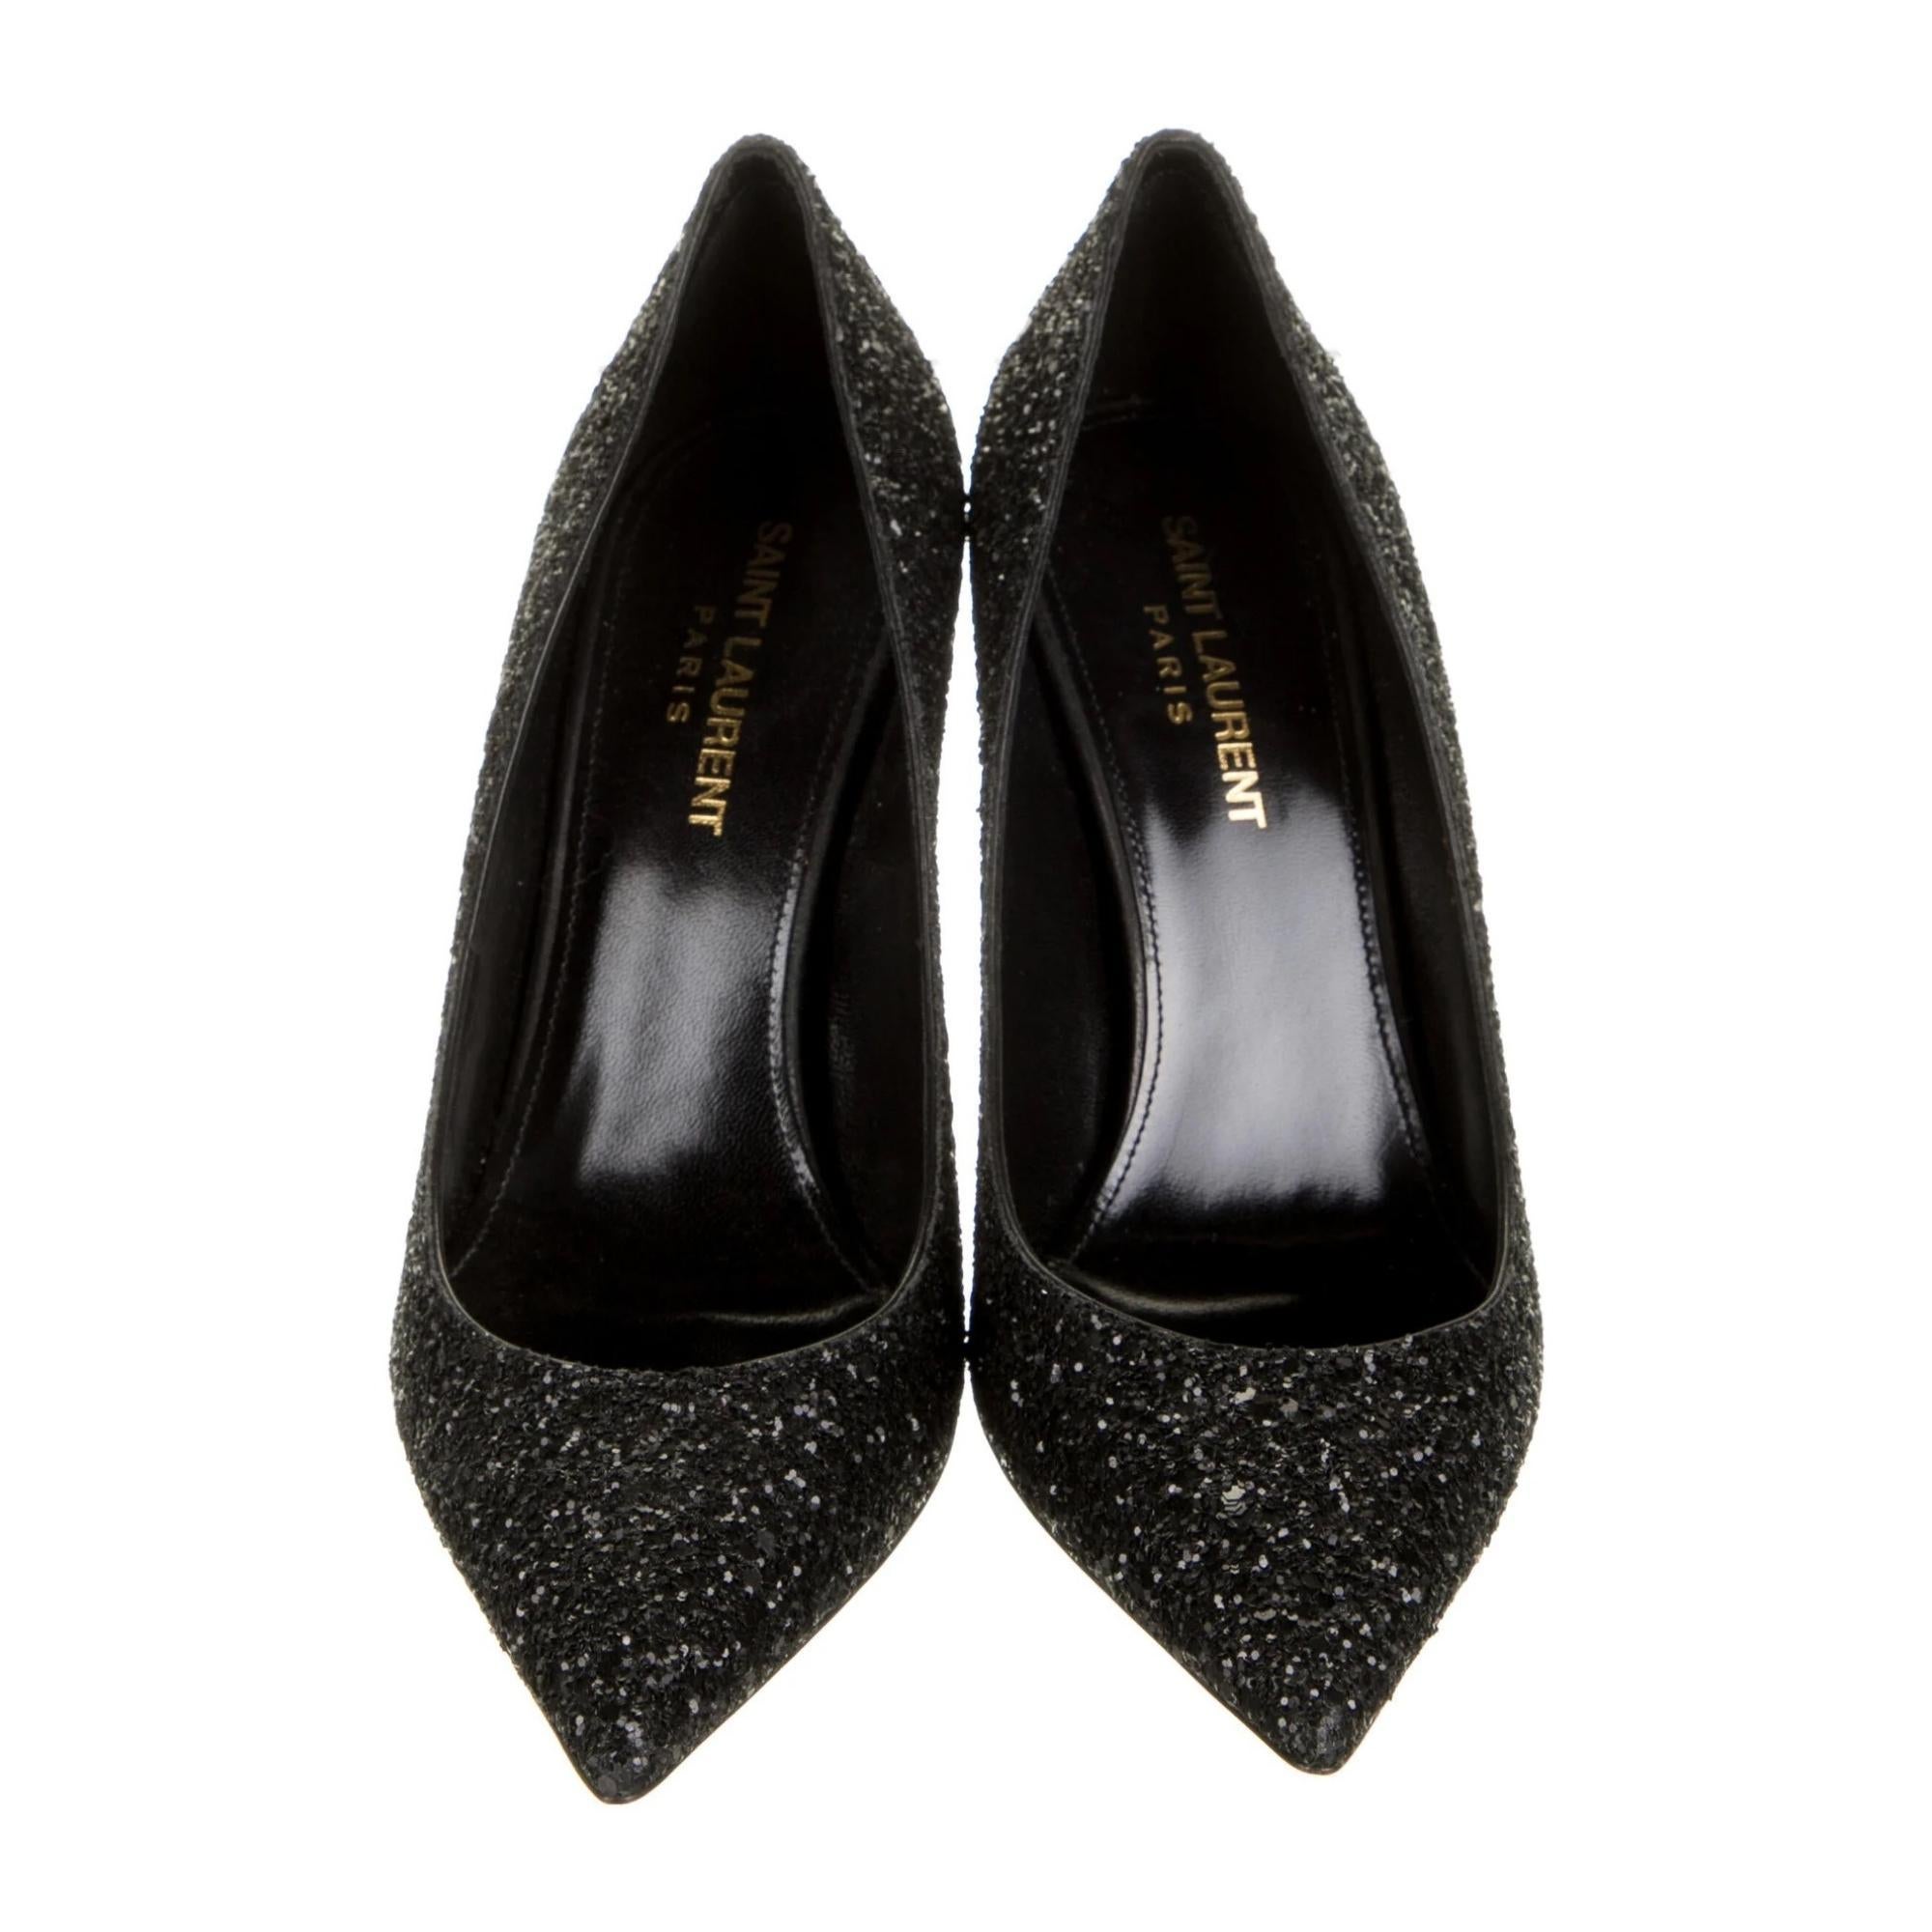 ysl black glitter heels